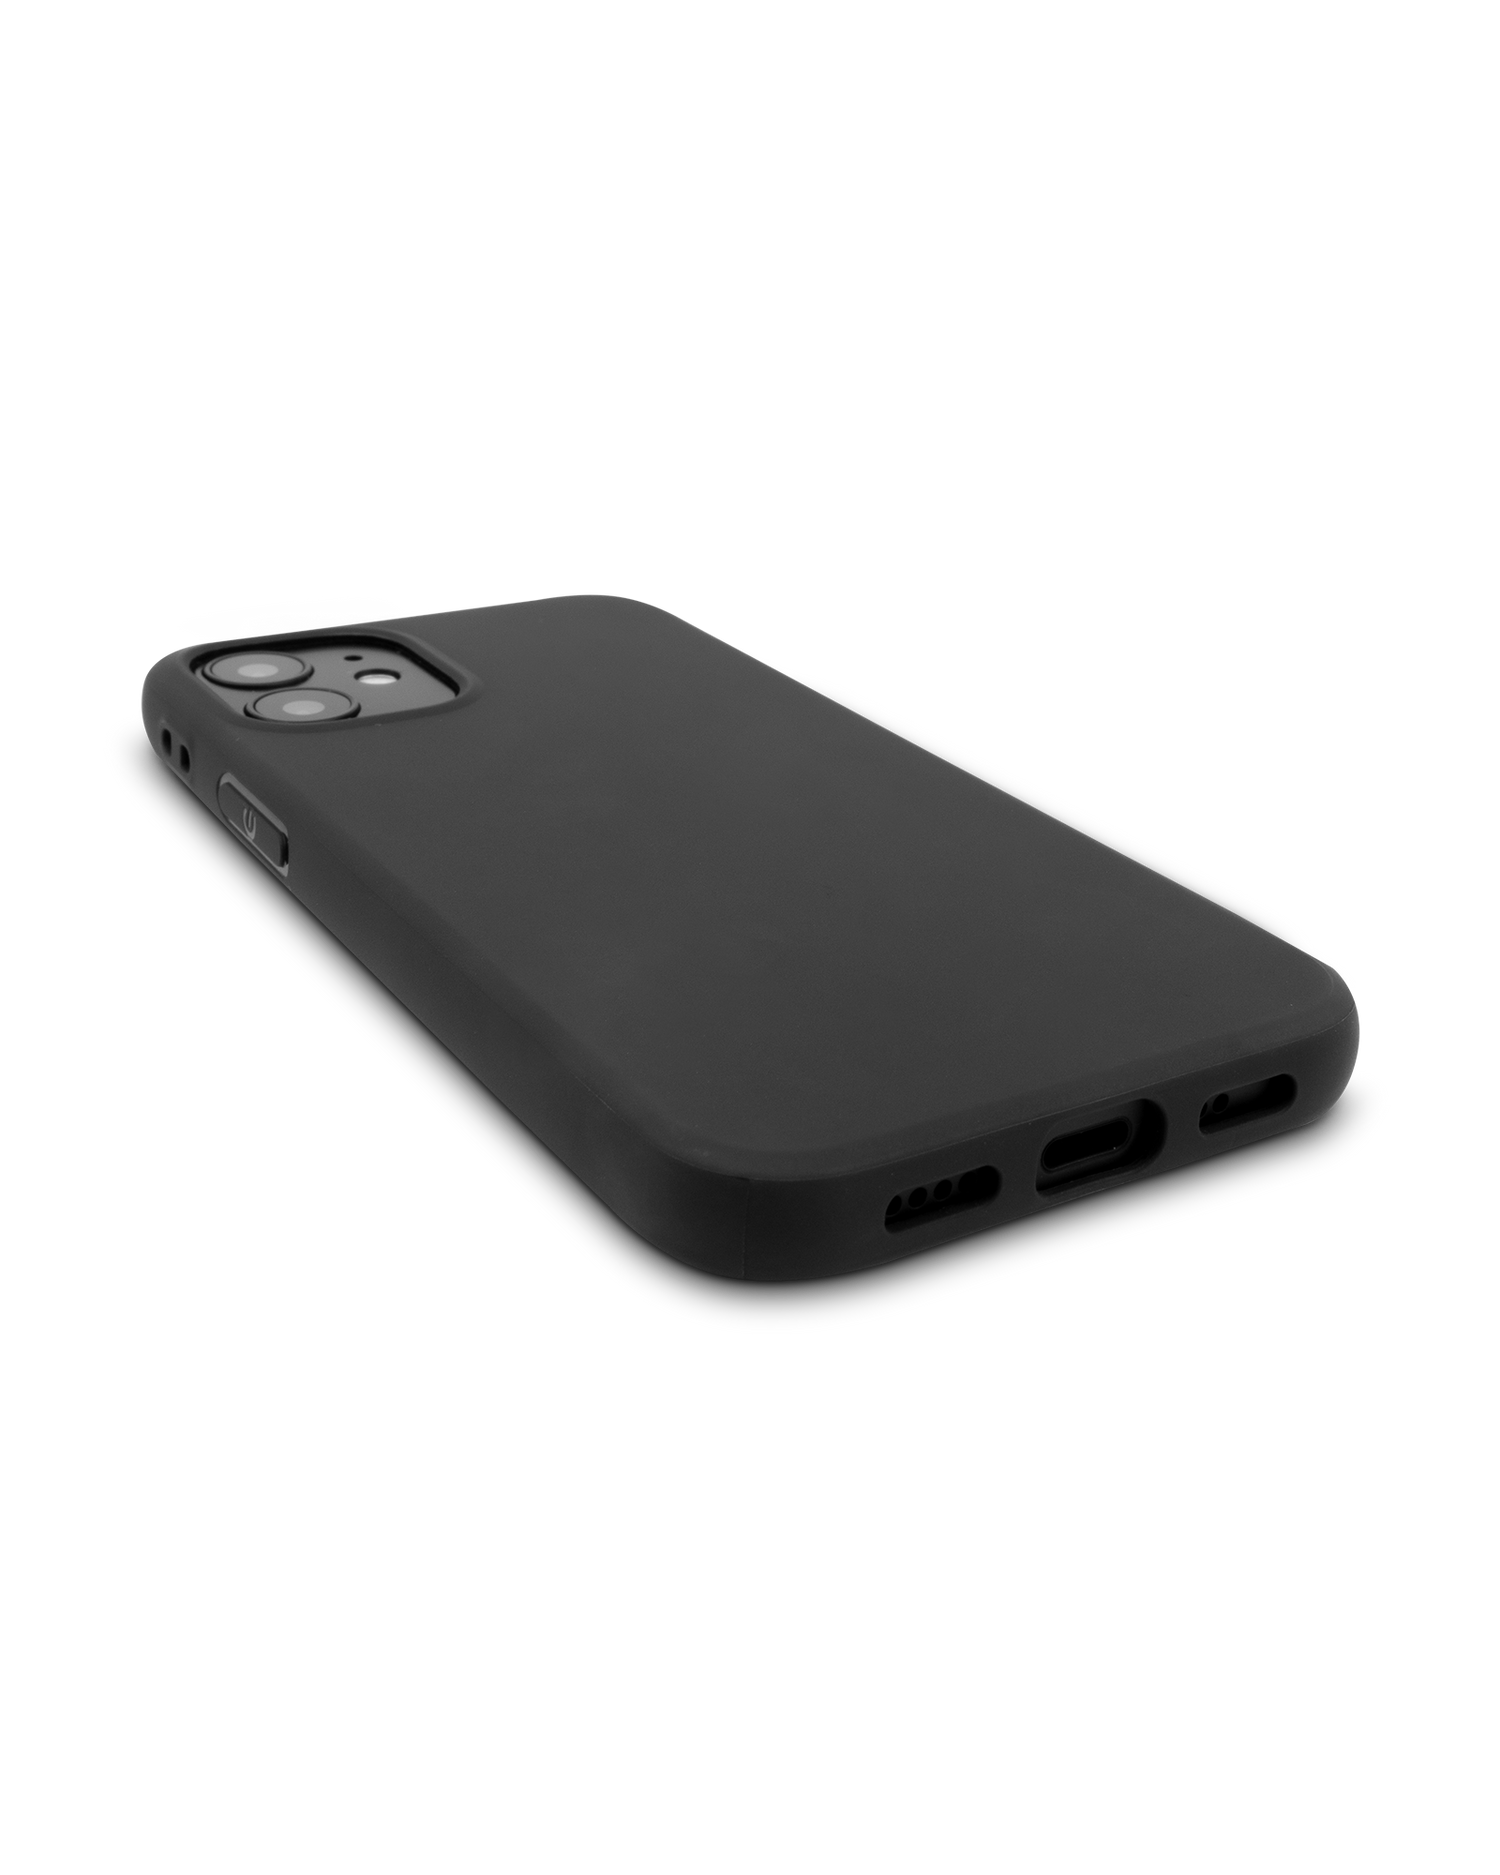 Schwarze Silikon Handyhülle für iPhone 12 mini: Smartphone liegend